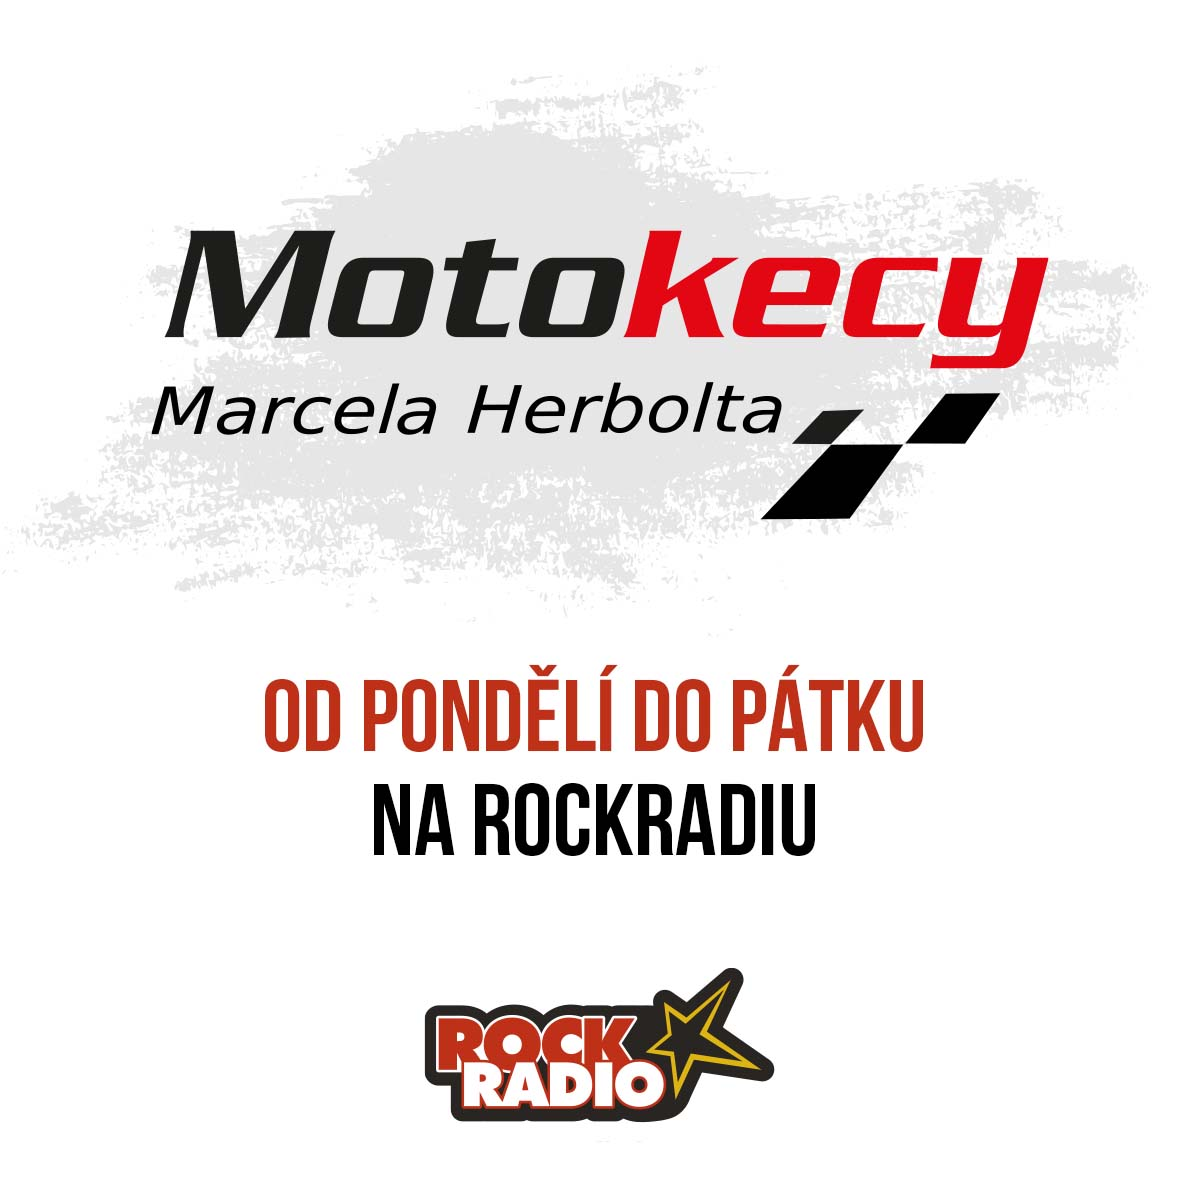 Motokecy Marcela Herbolta na středu 27. září